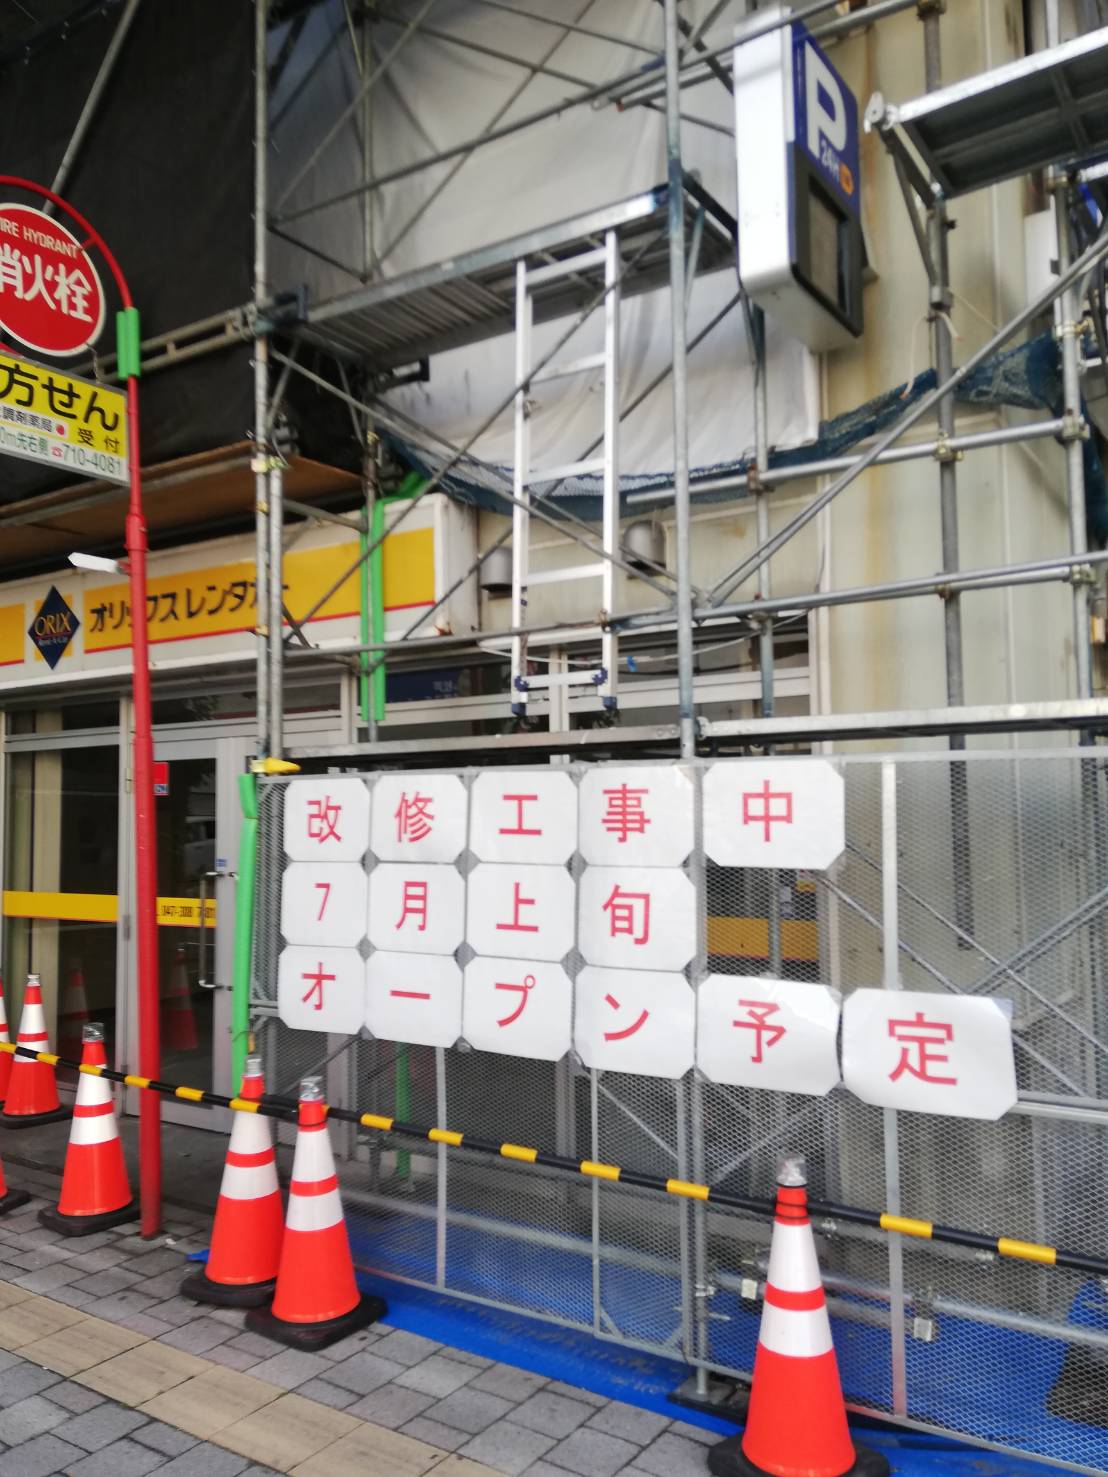 松戸ユアサ駐車場が改修工事 7月再開予定の提携店舗多い松戸駅前駐車場 松戸ロード 松戸の地域情報